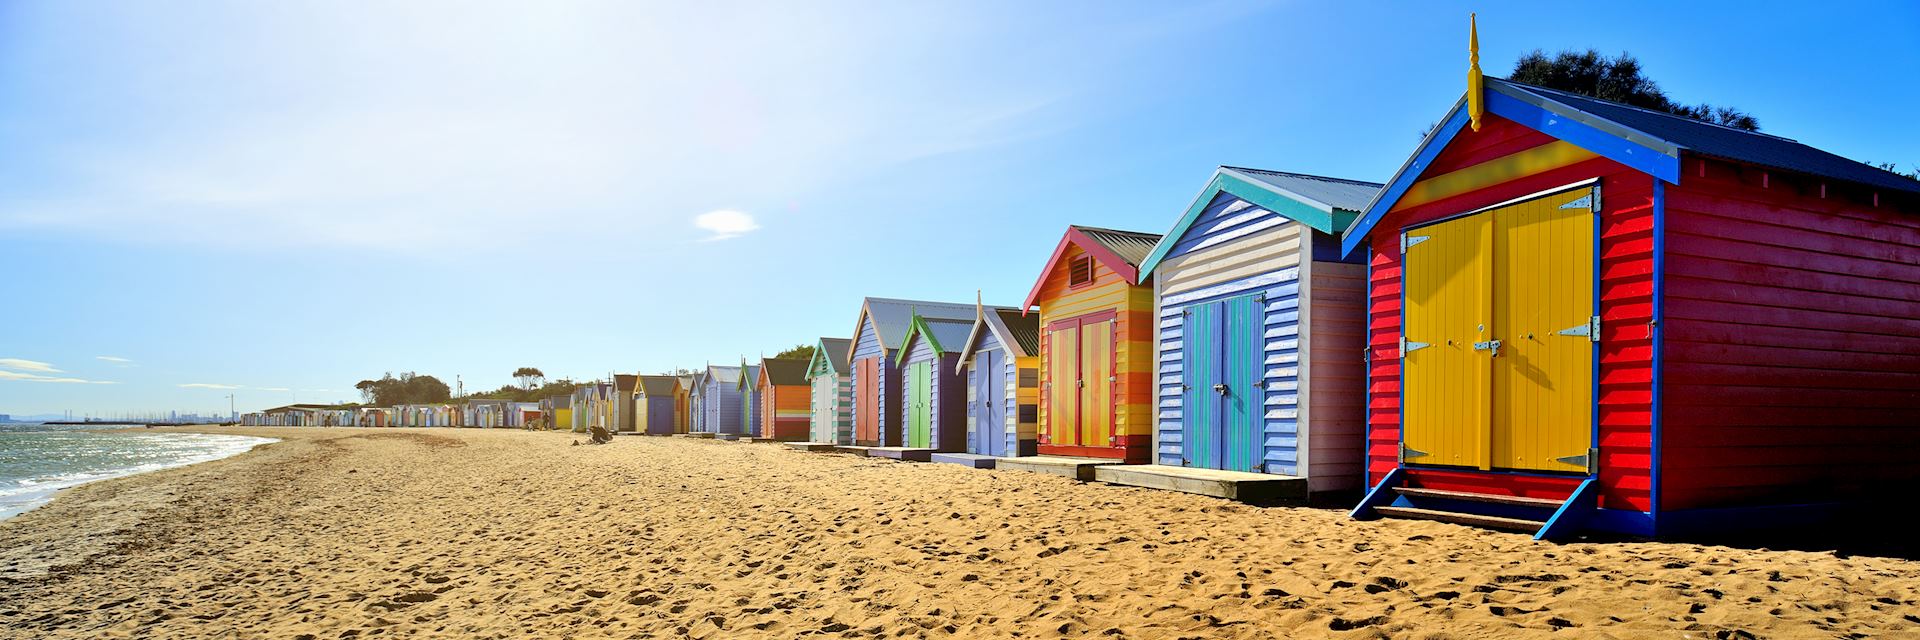 Beach huts, Brighton